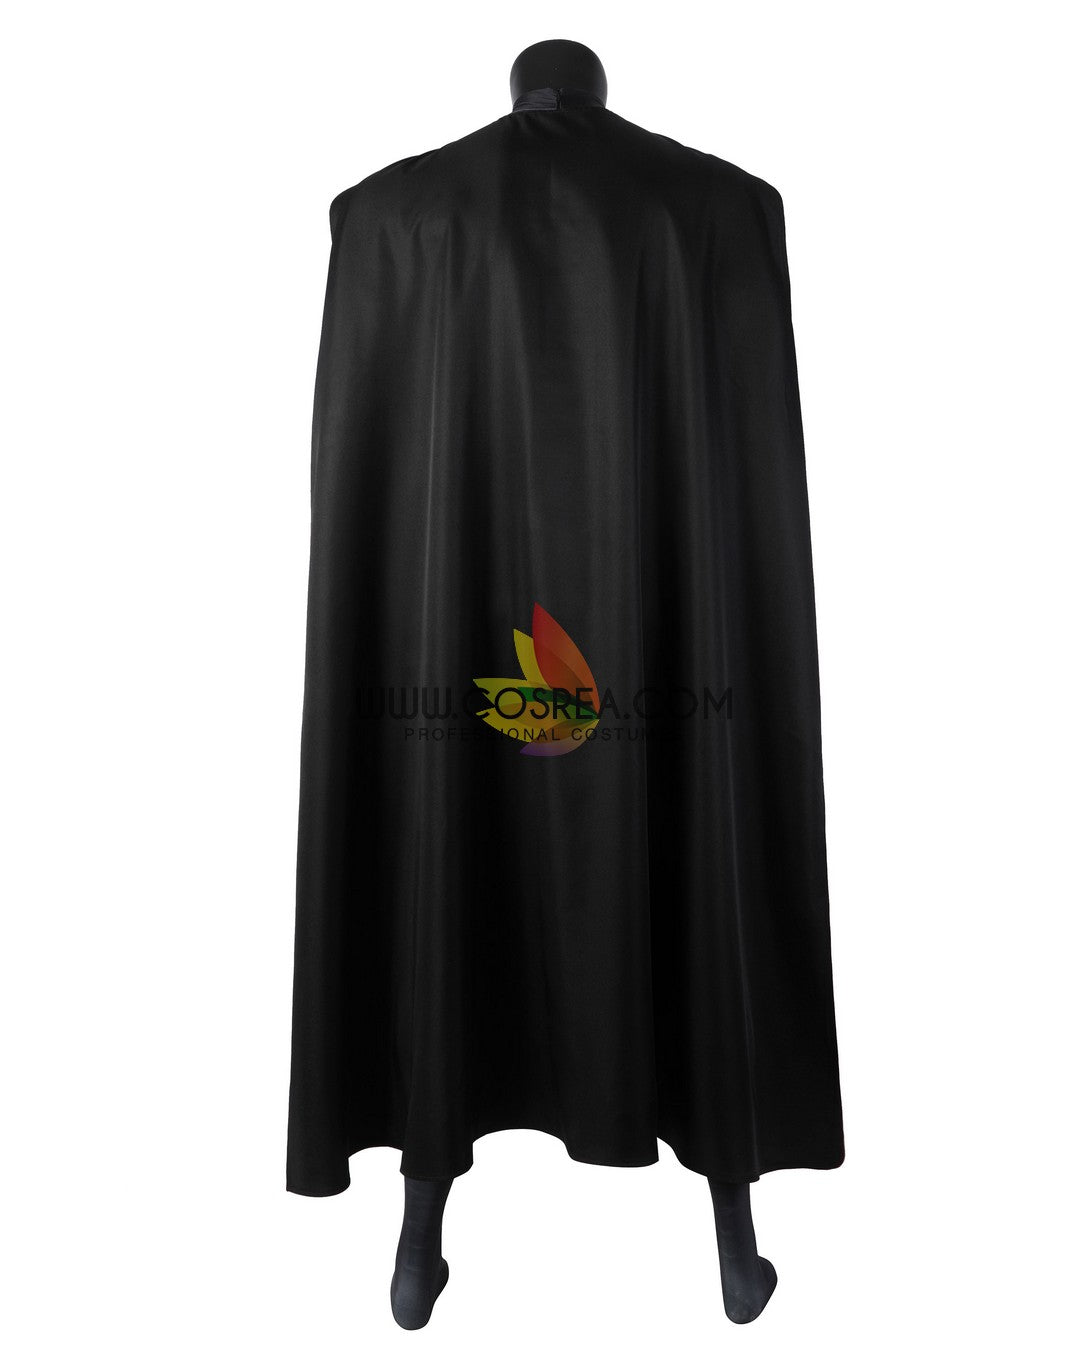 Batman 1989 Movie Version Digital Printed Cosplay Costume